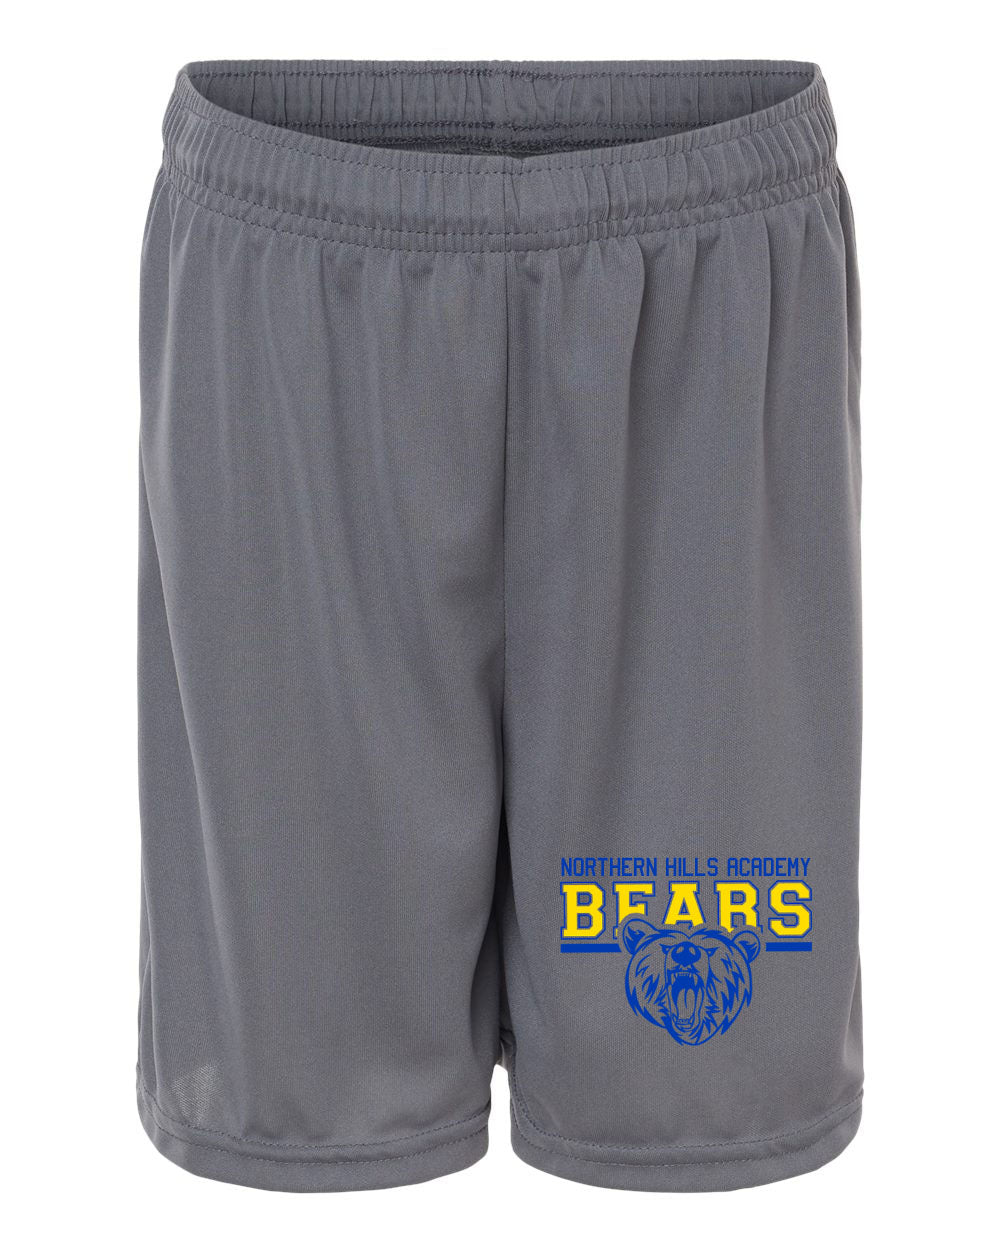 NH Bears Shorts